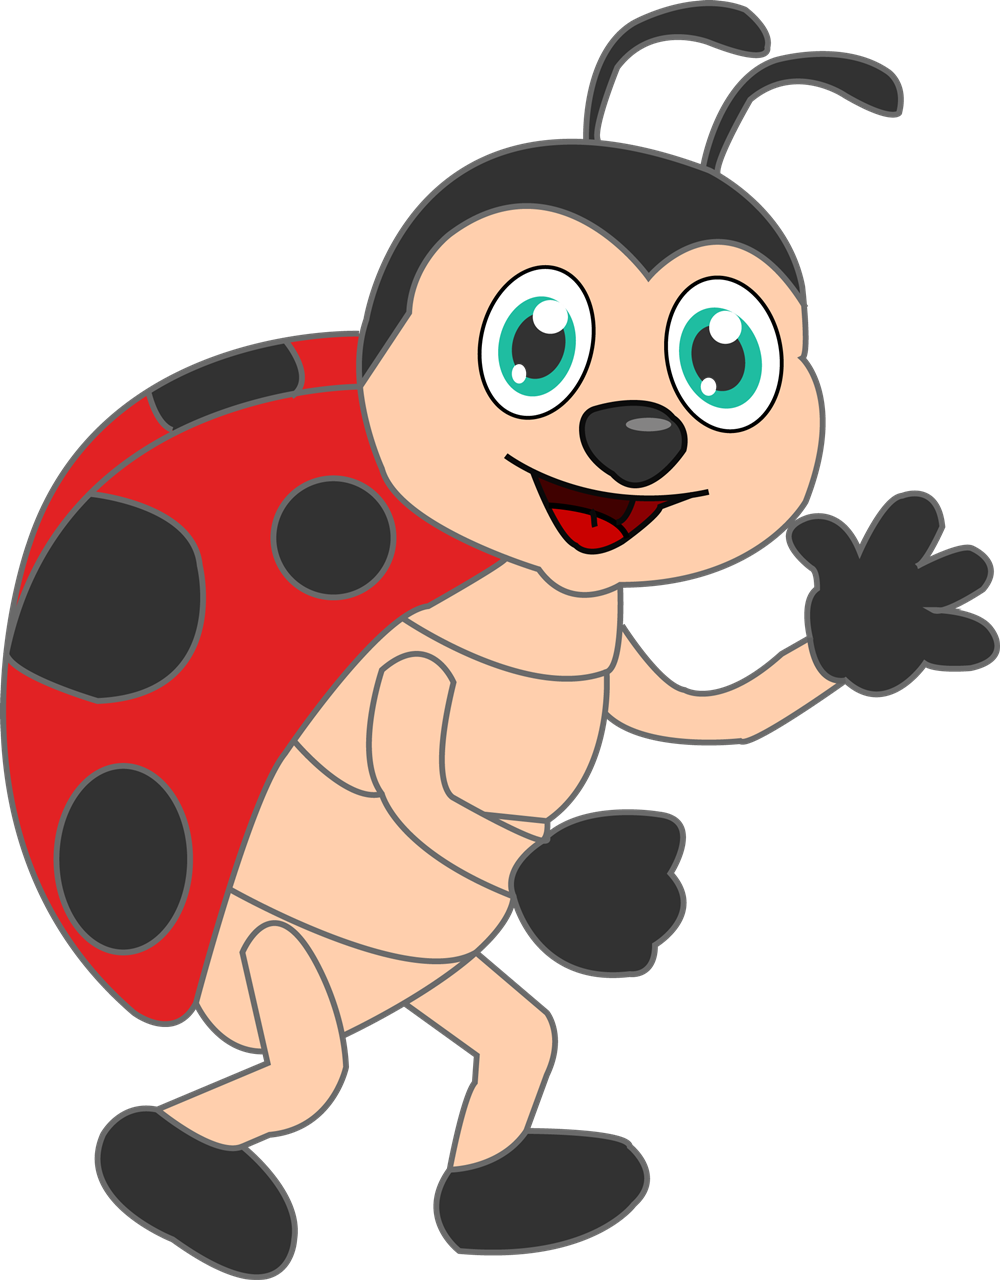 Ladybug without Spots